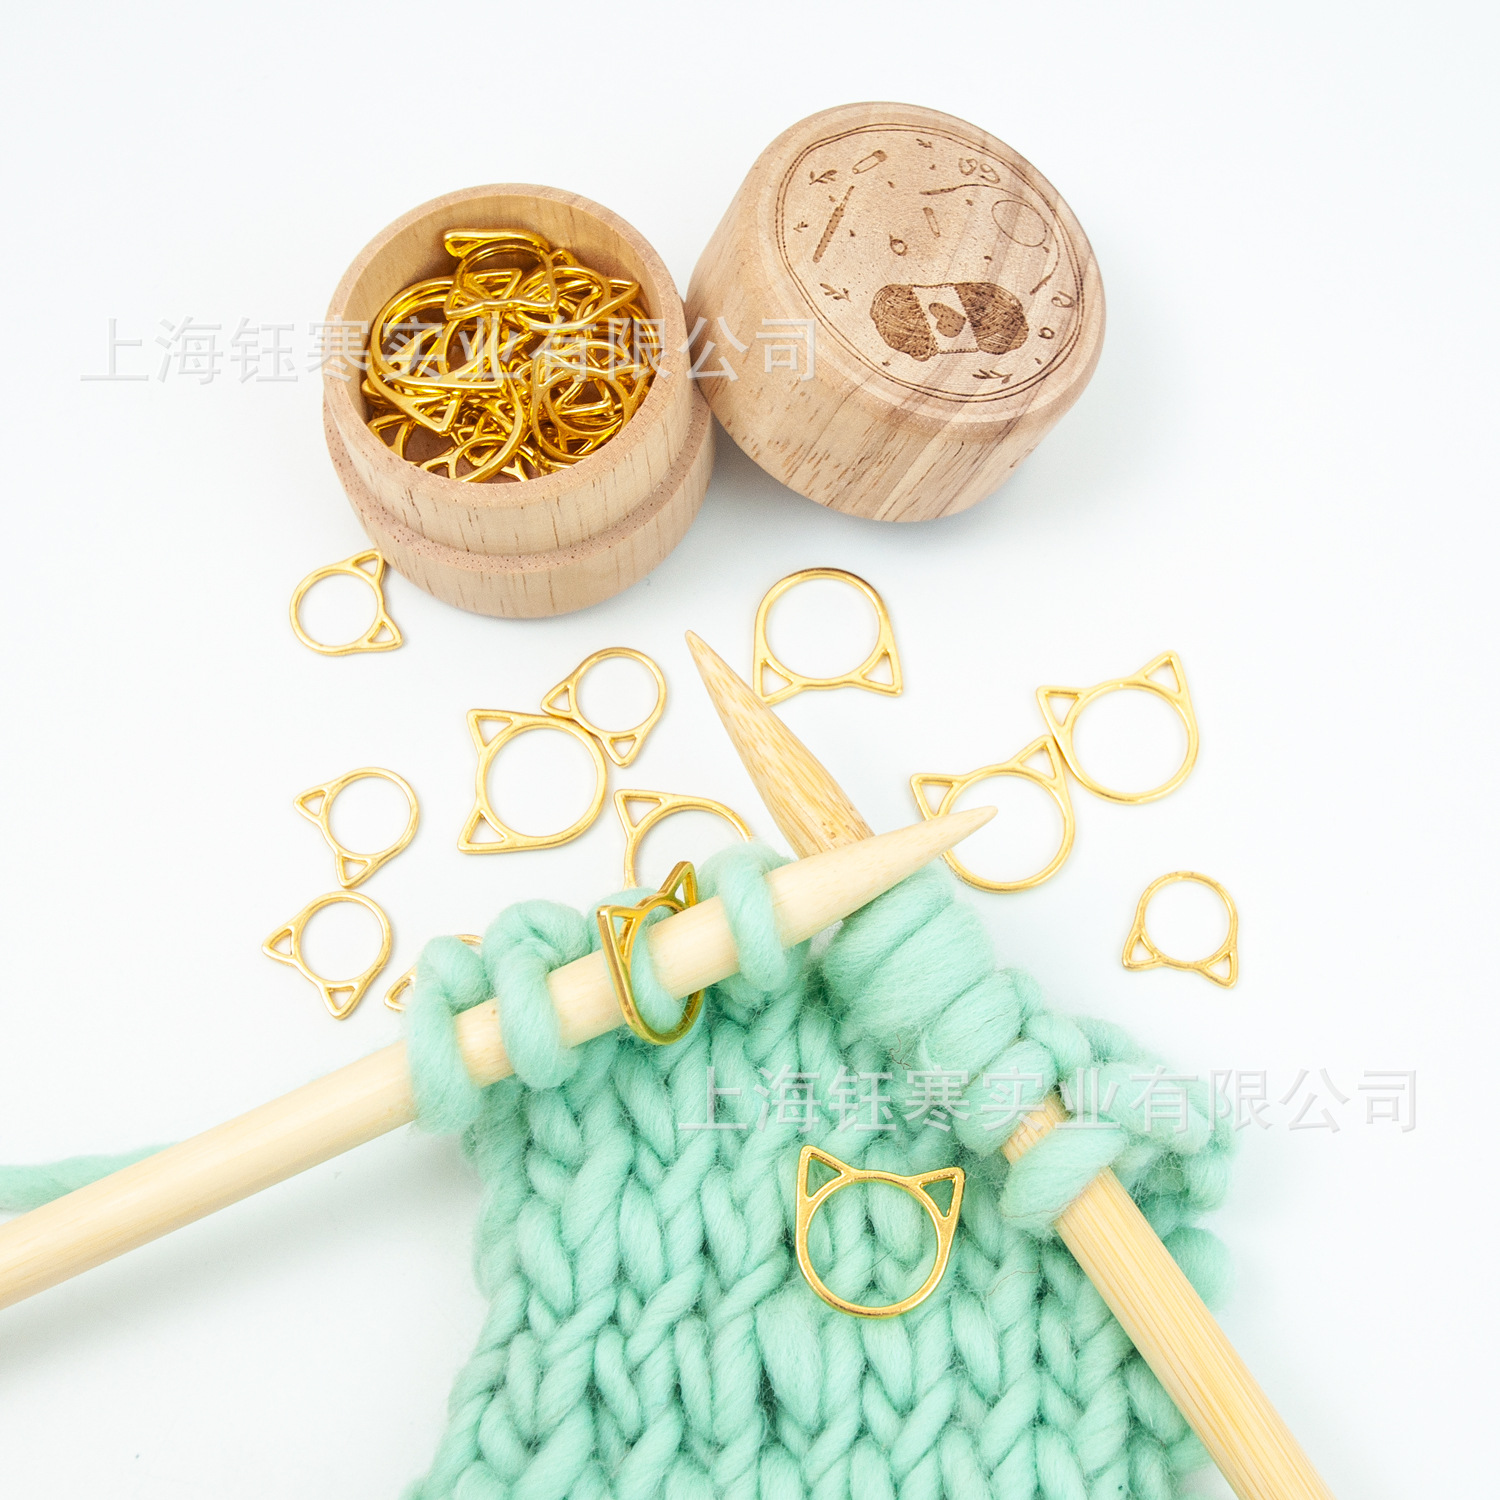 Golden Cute Ear Mark Button Sweater Knitting Scarf Knitting Mark Button Sweater Knitting Tool 30 Pack